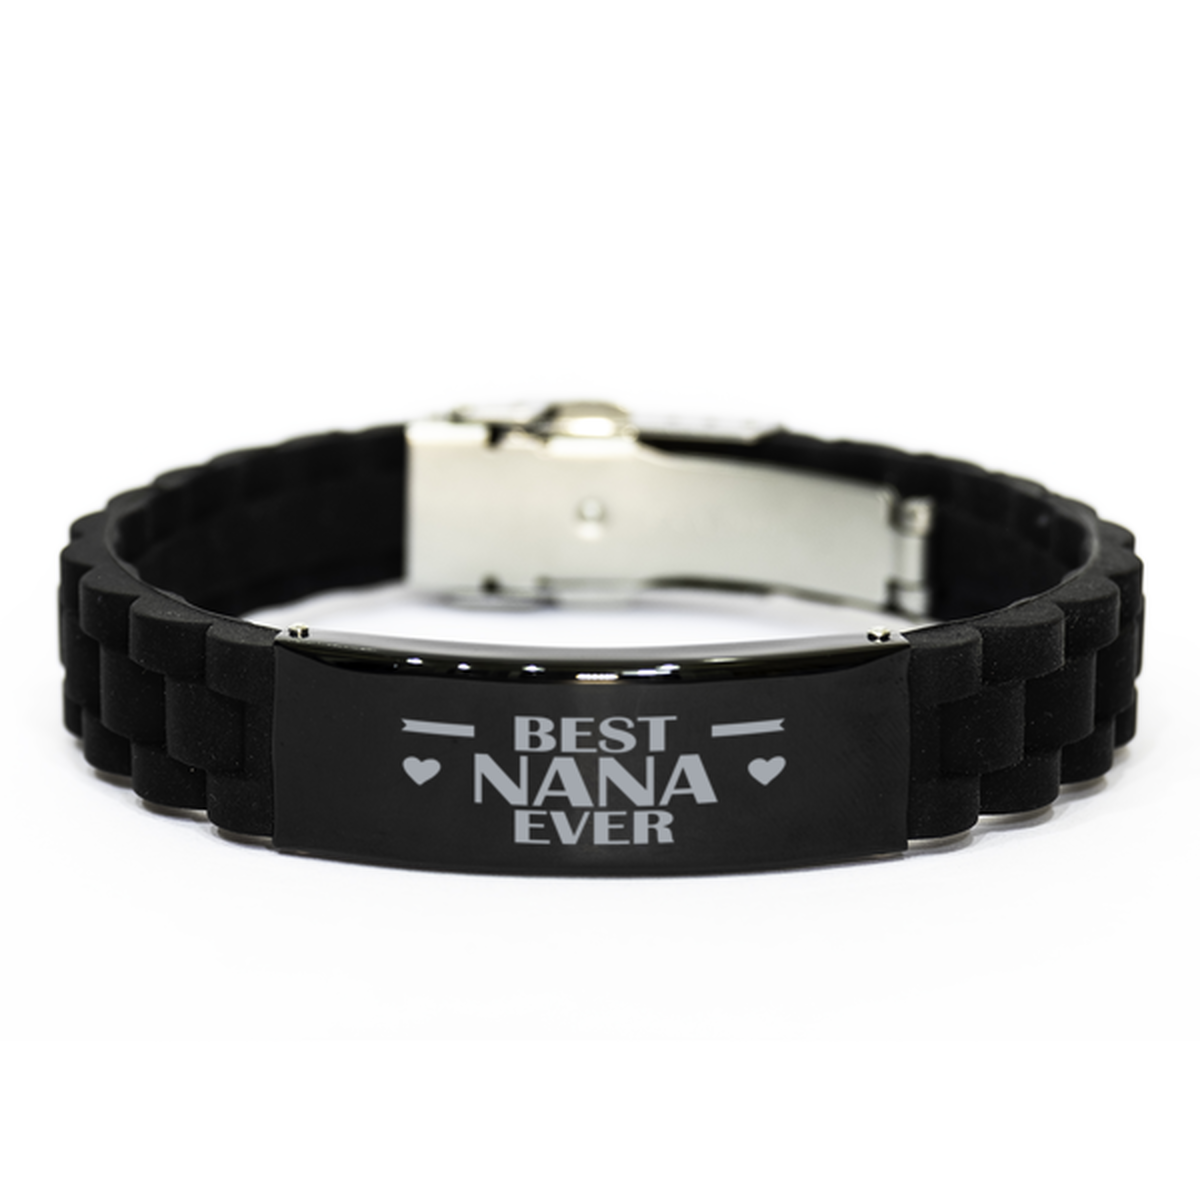 Best Nana Ever Nana Gifts, Funny Black Engraved Bracelet For Nana, Family Gifts For Women